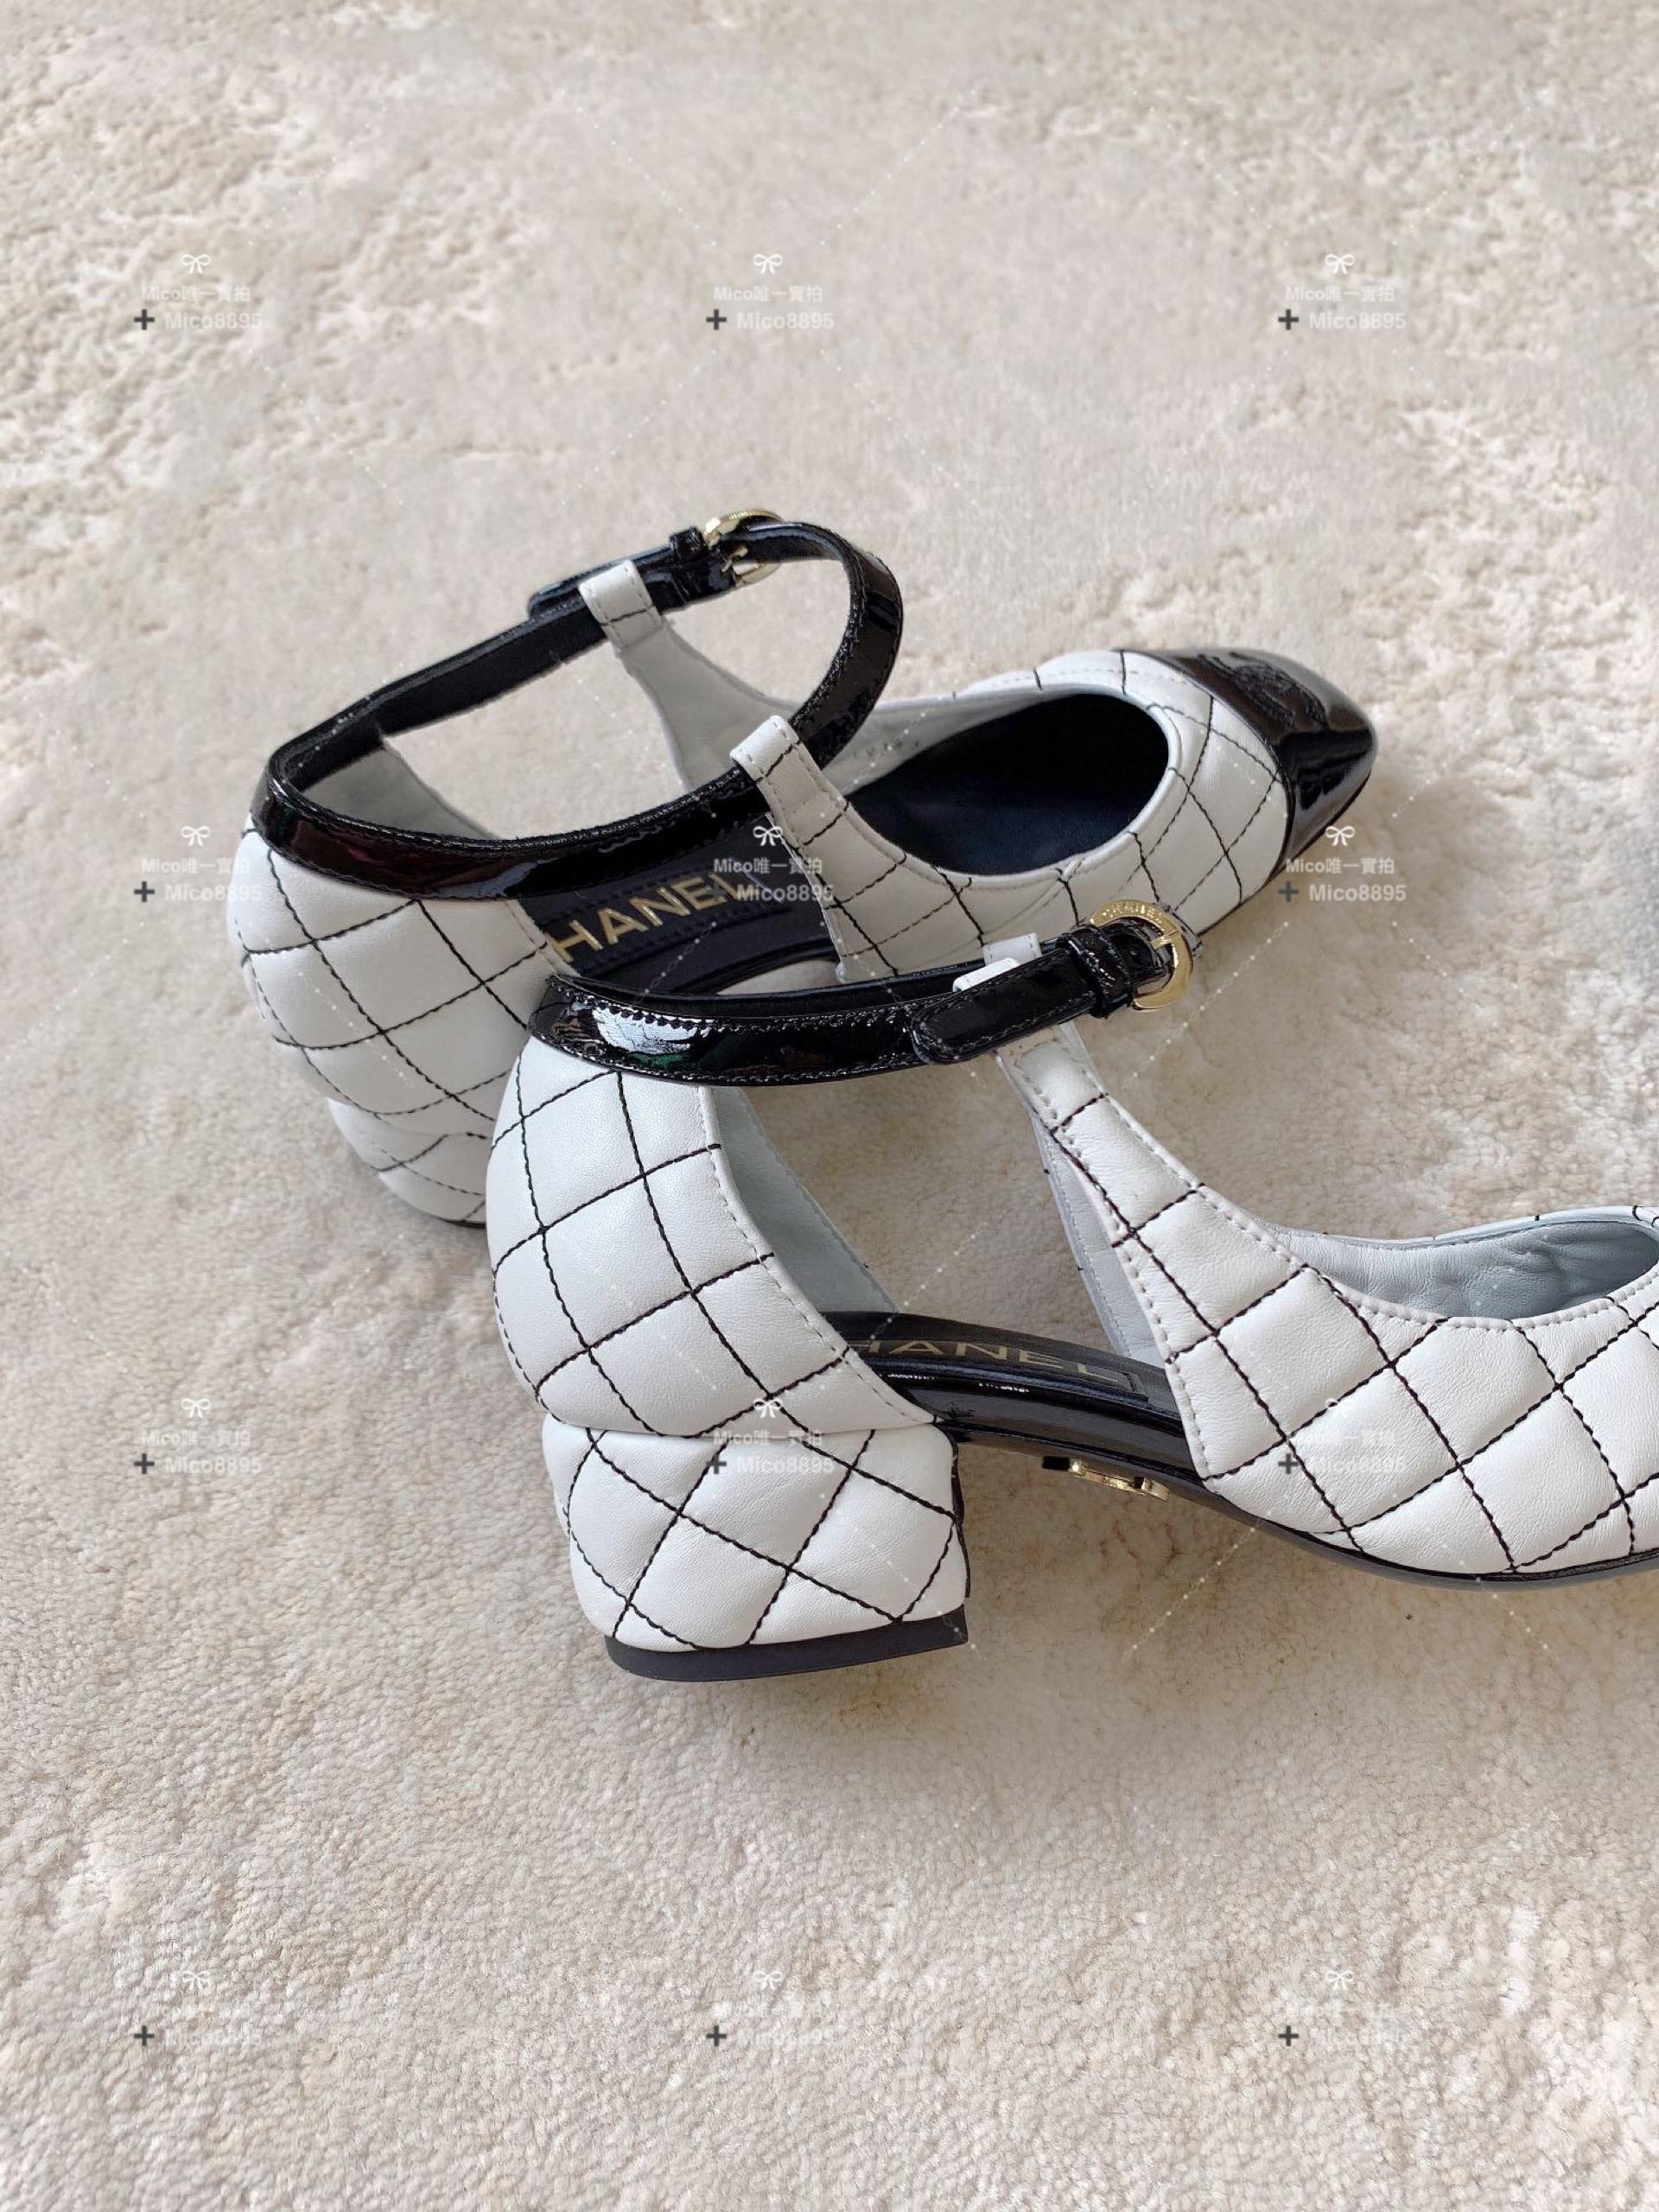 Chanel 菱格刺繡 真皮 瑪莉珍跟鞋 涼鞋 3.5cm跟高